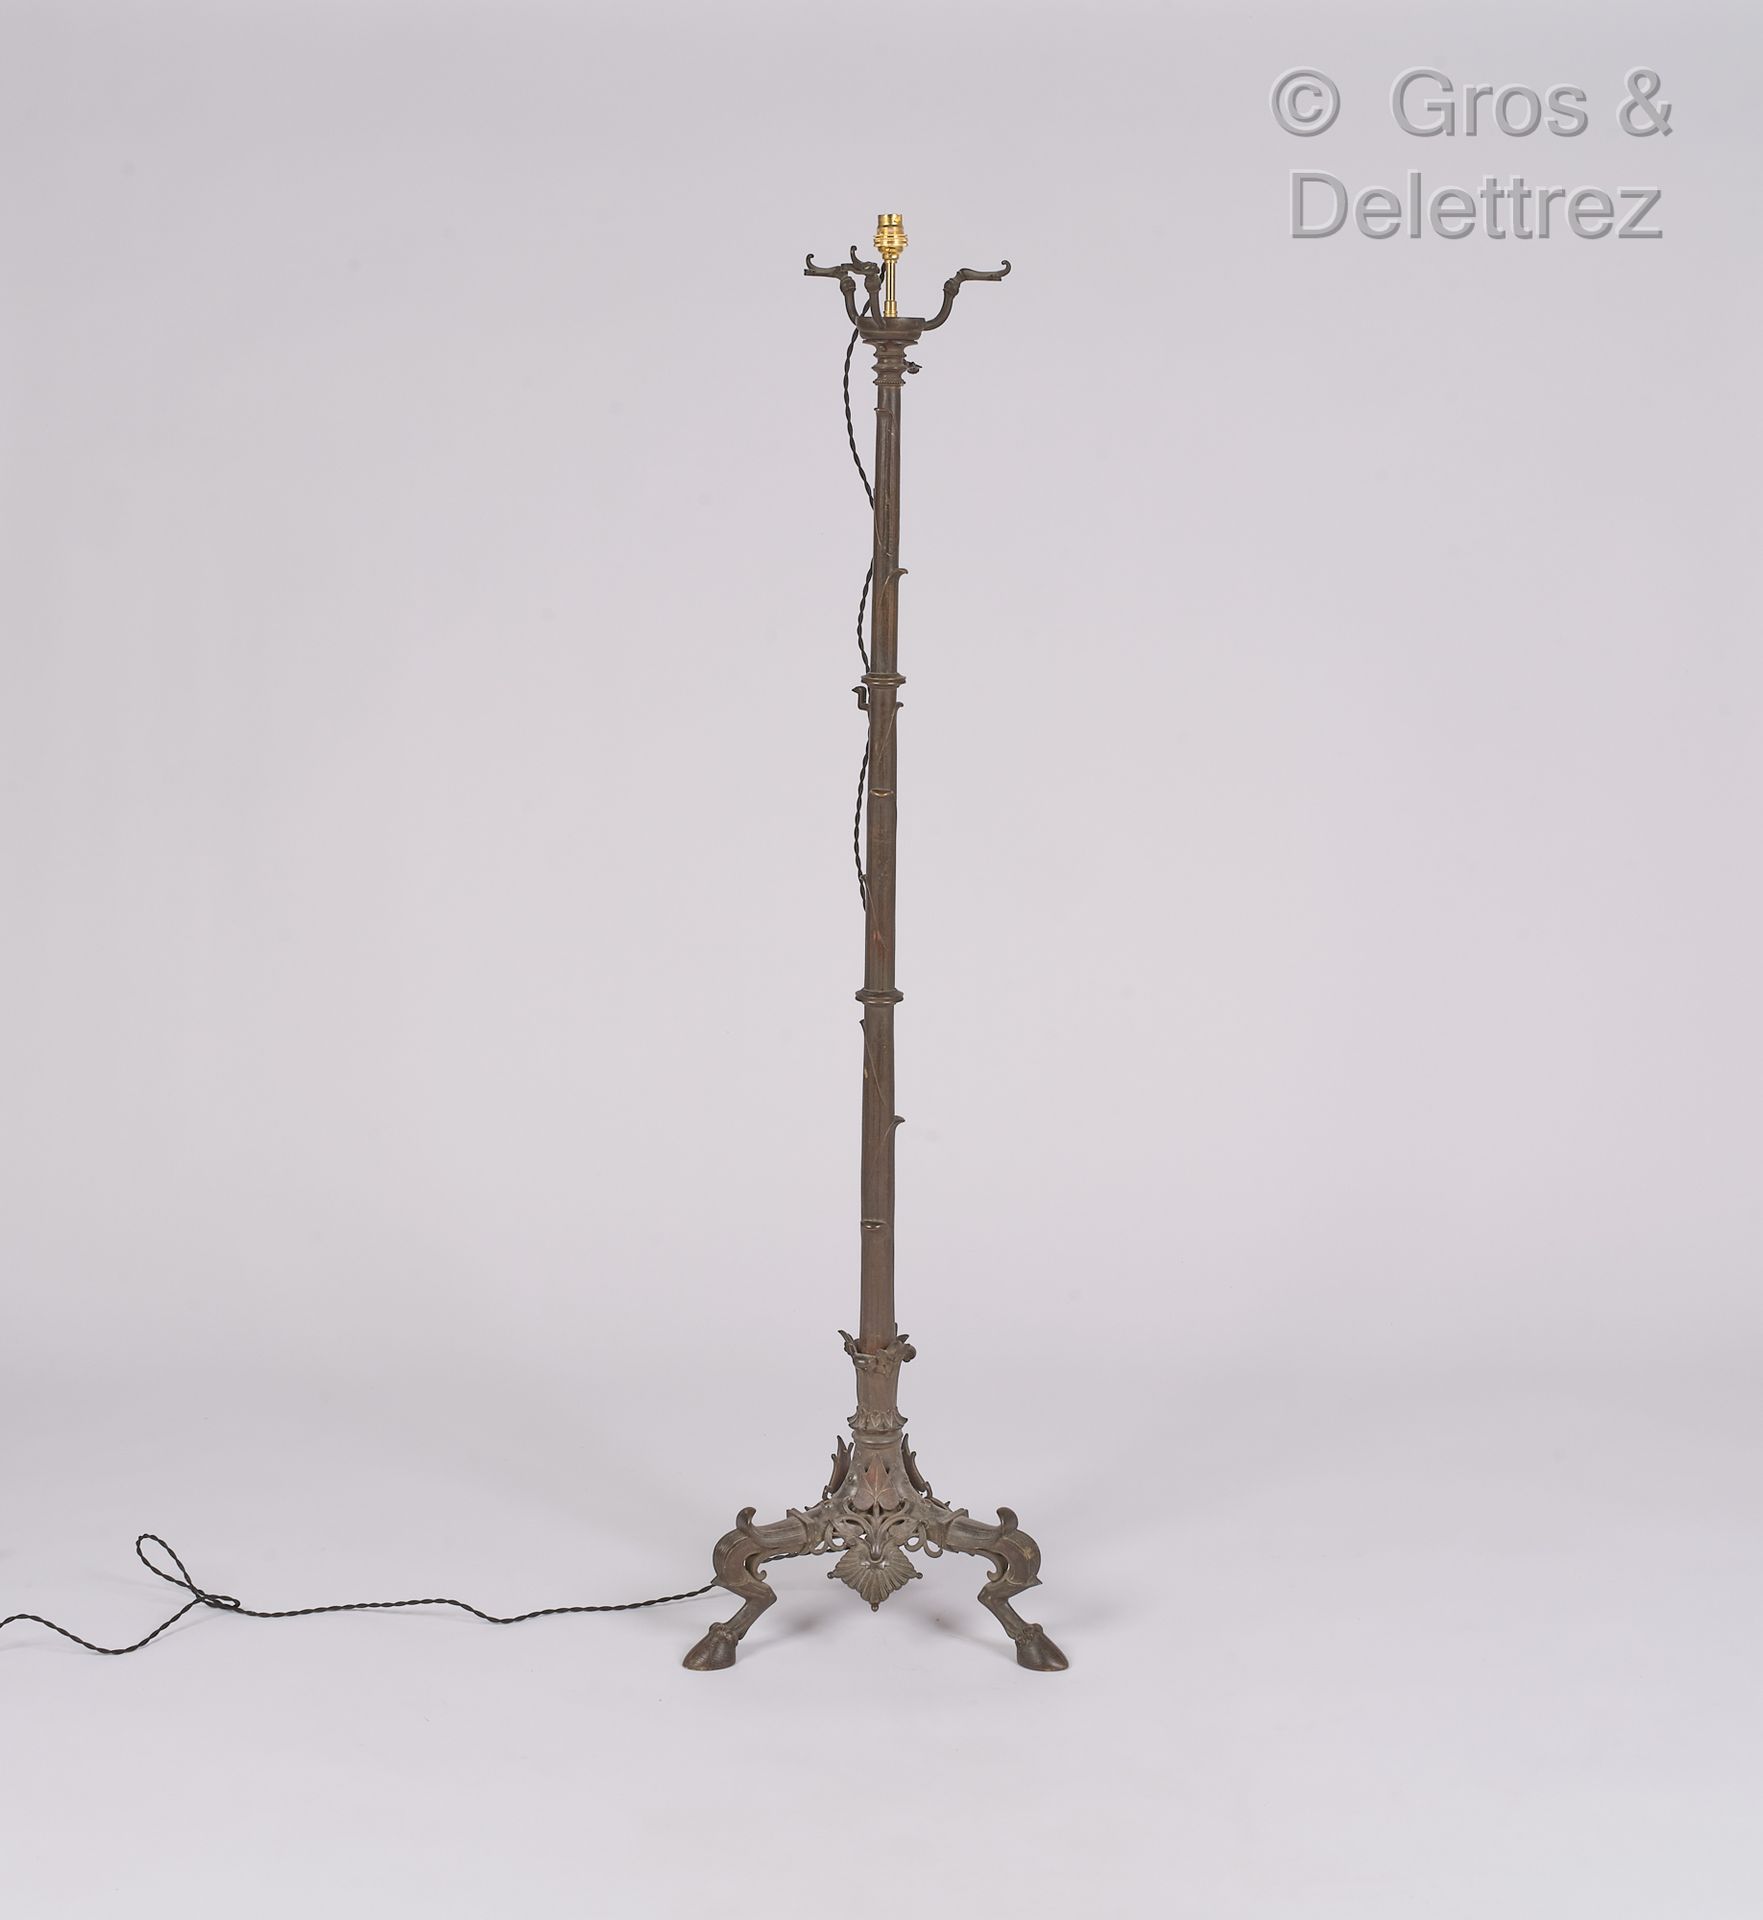 Null 40年代/50年代的作品

金属和青铜材质的落地灯，带有炮铜色光泽

以凯里罗斯别墅的精神工作

高：137厘米